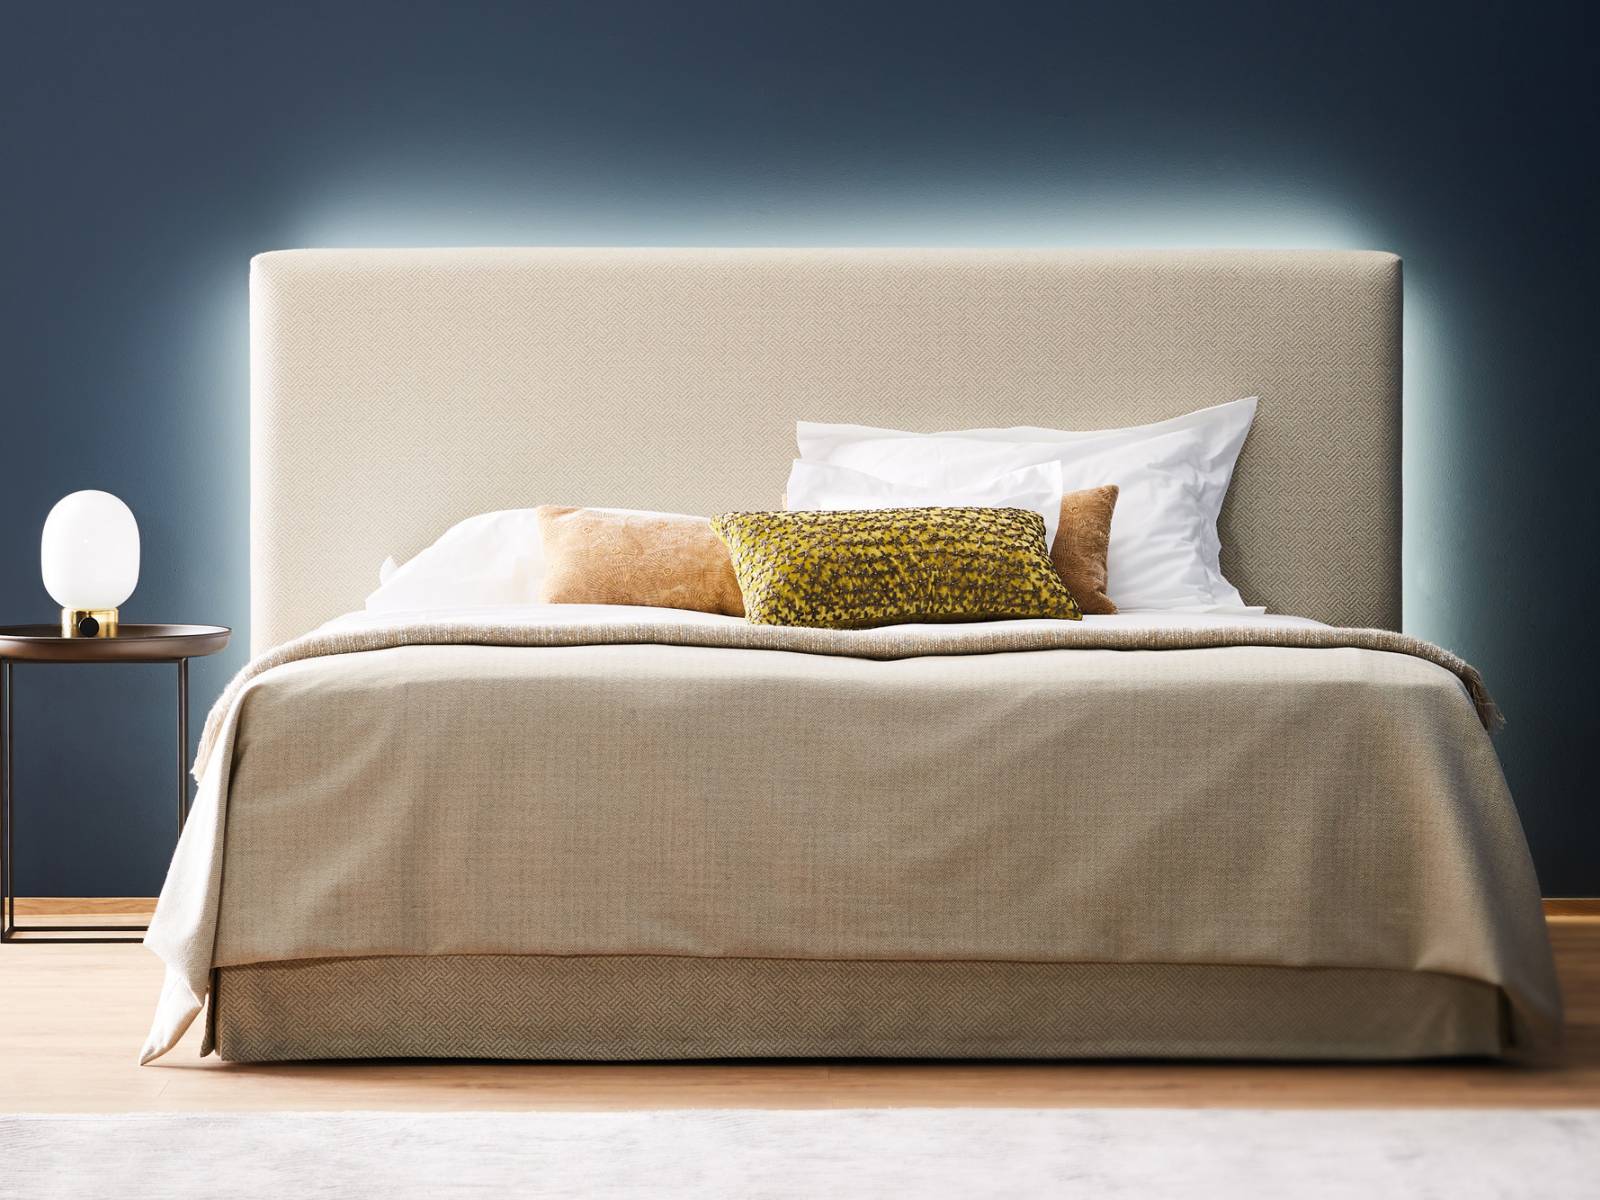 Der deutsche Bettenhersteller überraschte mit stimmungsvollem Licht hinter dem Kopfteil des Bettes «Daylight». Via App gesteuert, sorgt es jederzeit für die optimale Beleuchtung im Schlafzimmer. Schramm.